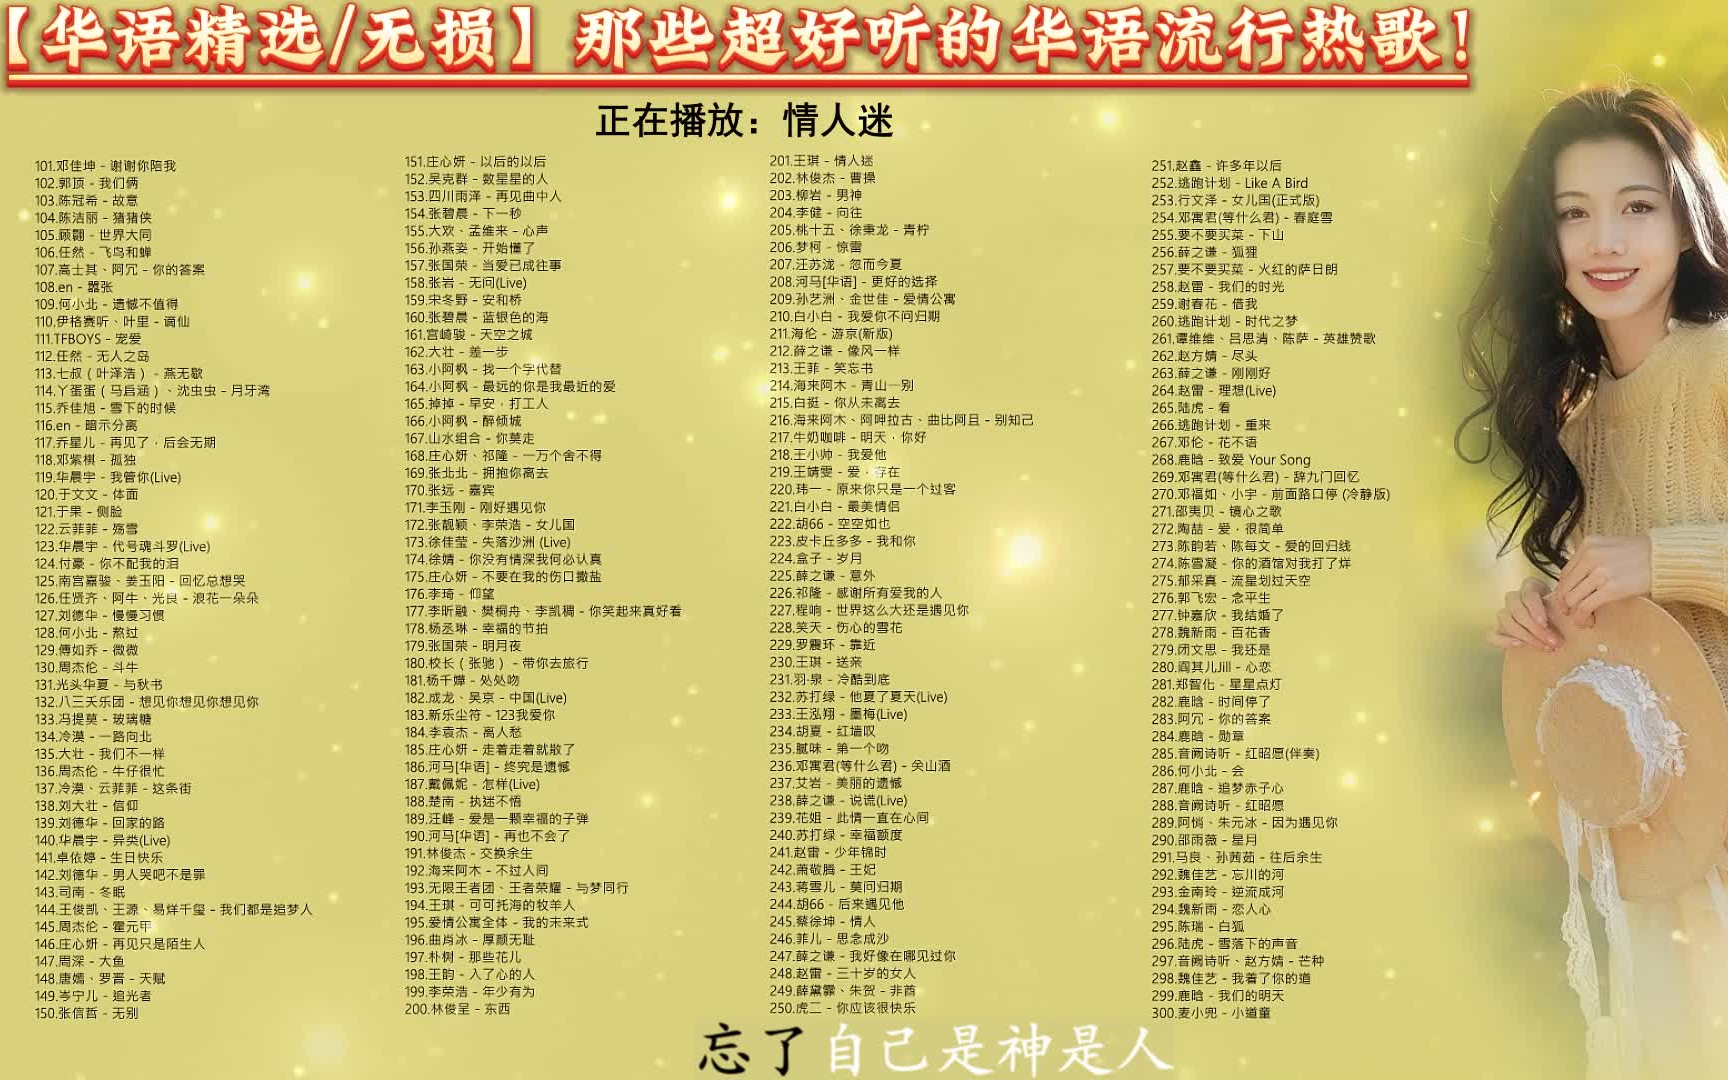 【300首华语精选/无损】 那些超好听的华语流行歌曲大合集